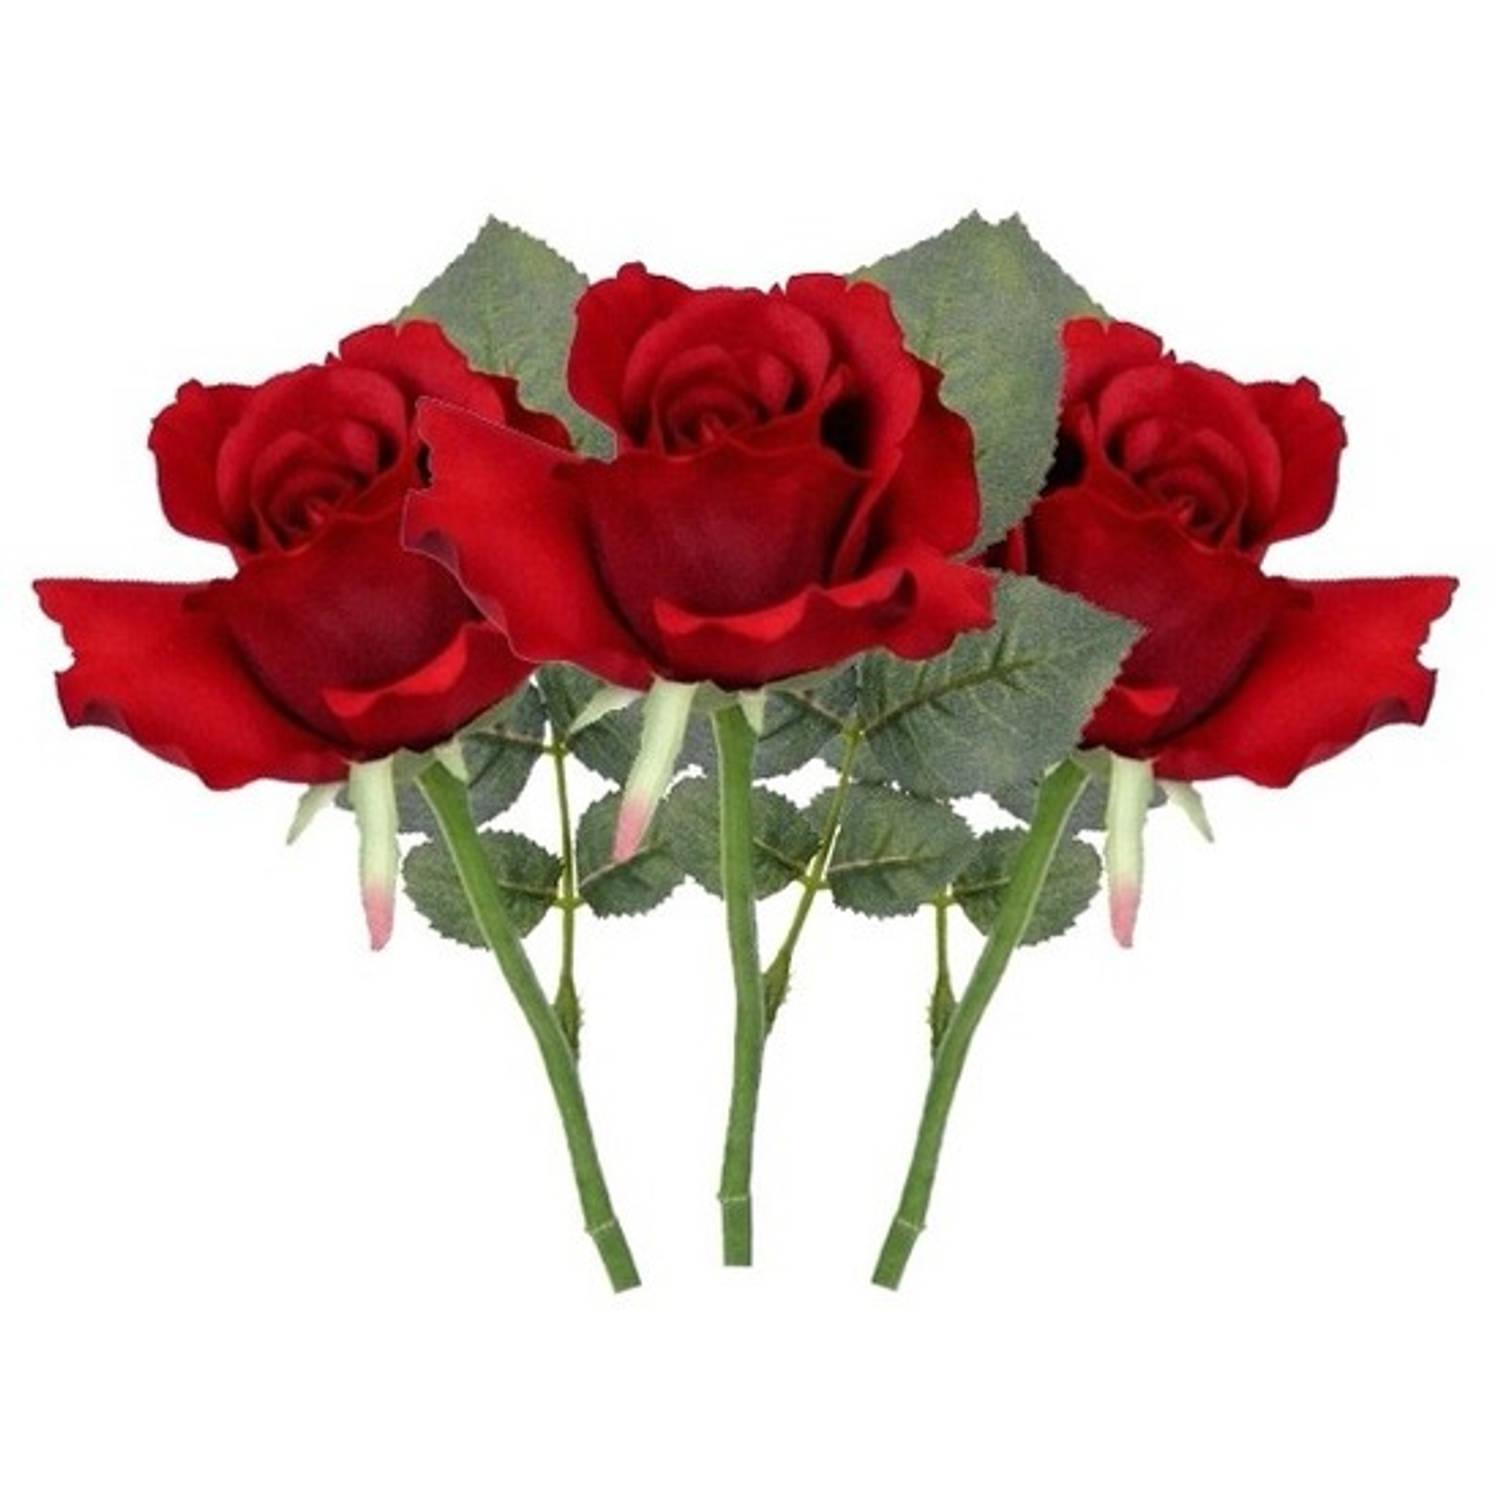 Verbinding verbroken longontsteking Nieuwe betekenis 3x Rode rozen kunstbloemen 30 cm - Kunstbloemen | Blokker